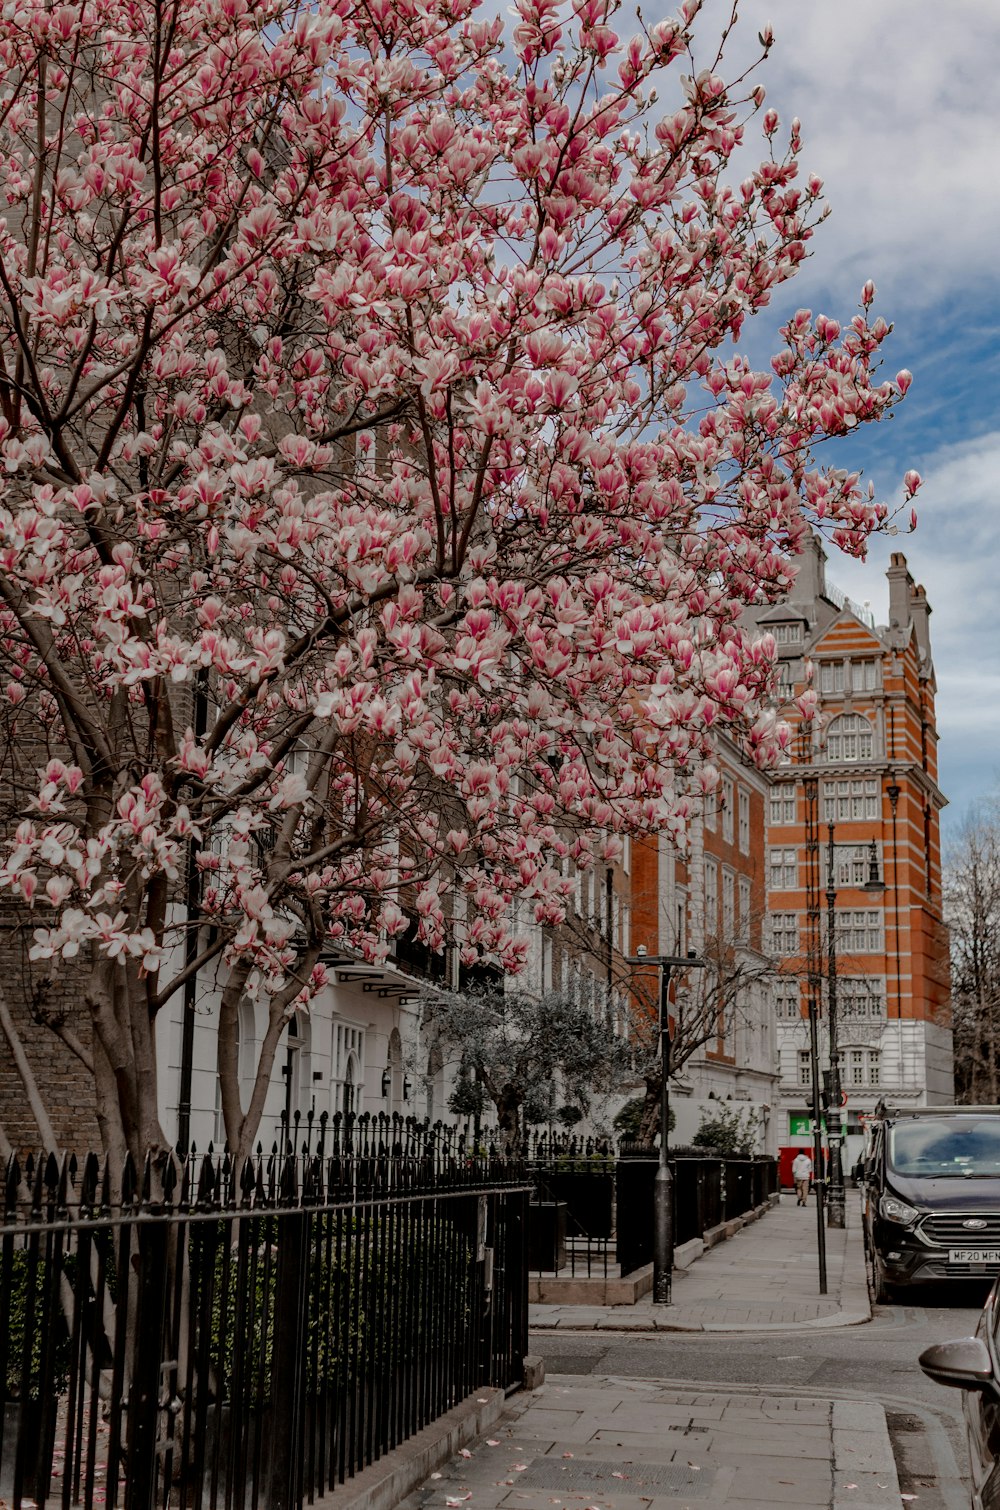 Un árbol con flores rosadas en una calle de la ciudad